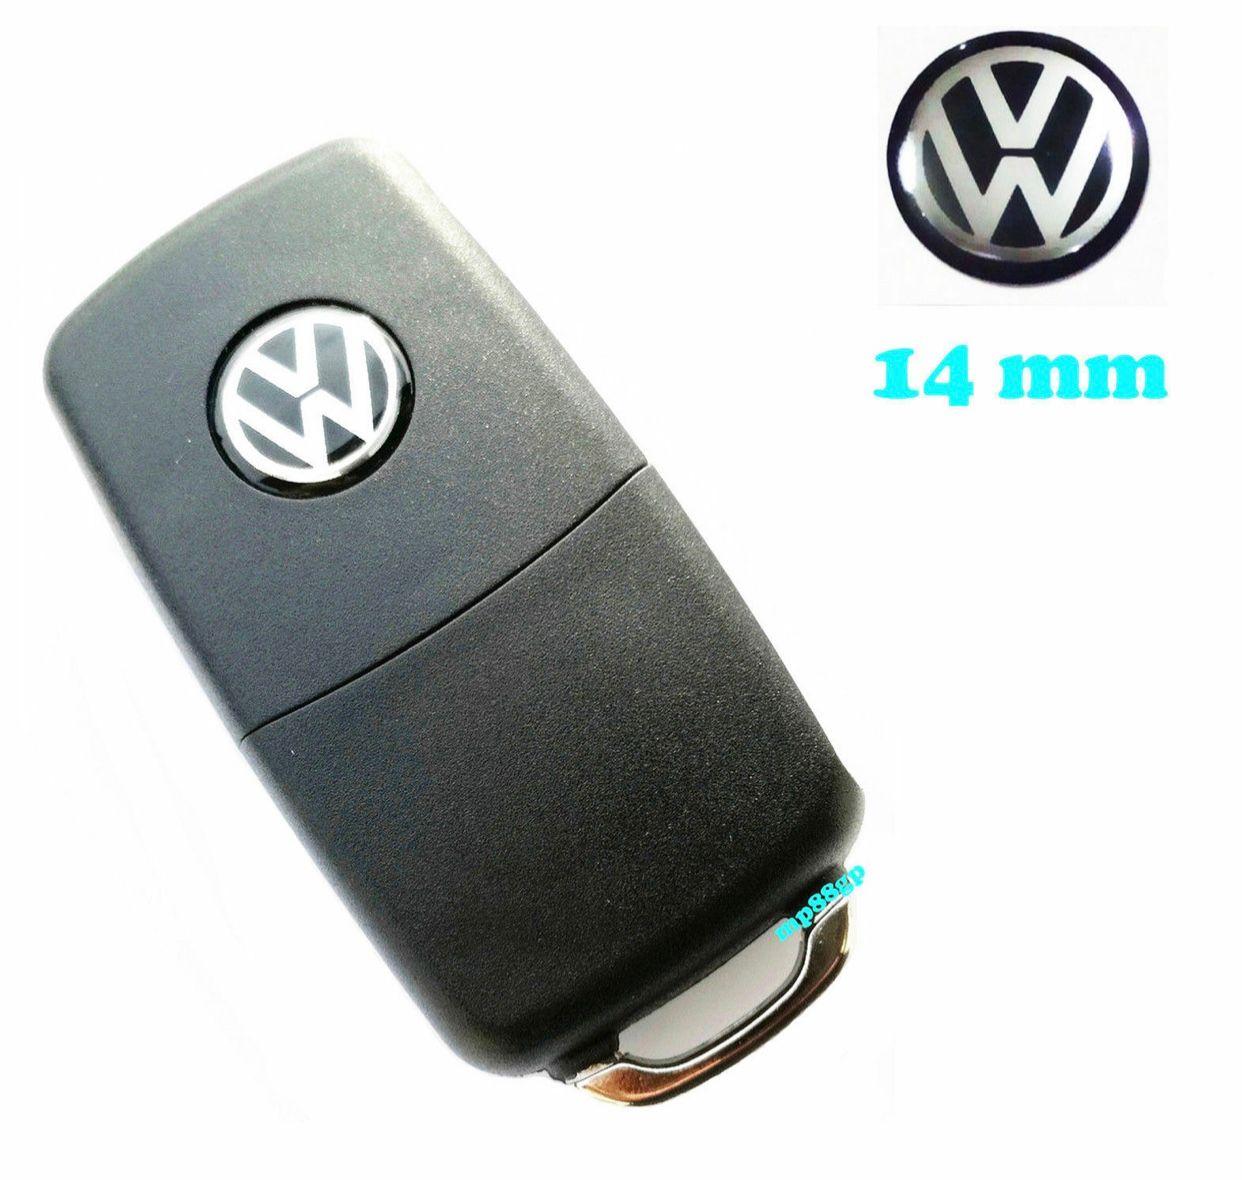  Volkswagen - 5H0837891FOD - Logo VW pour clé de contact,  télécommande ou plaque autocollante - 10 mm